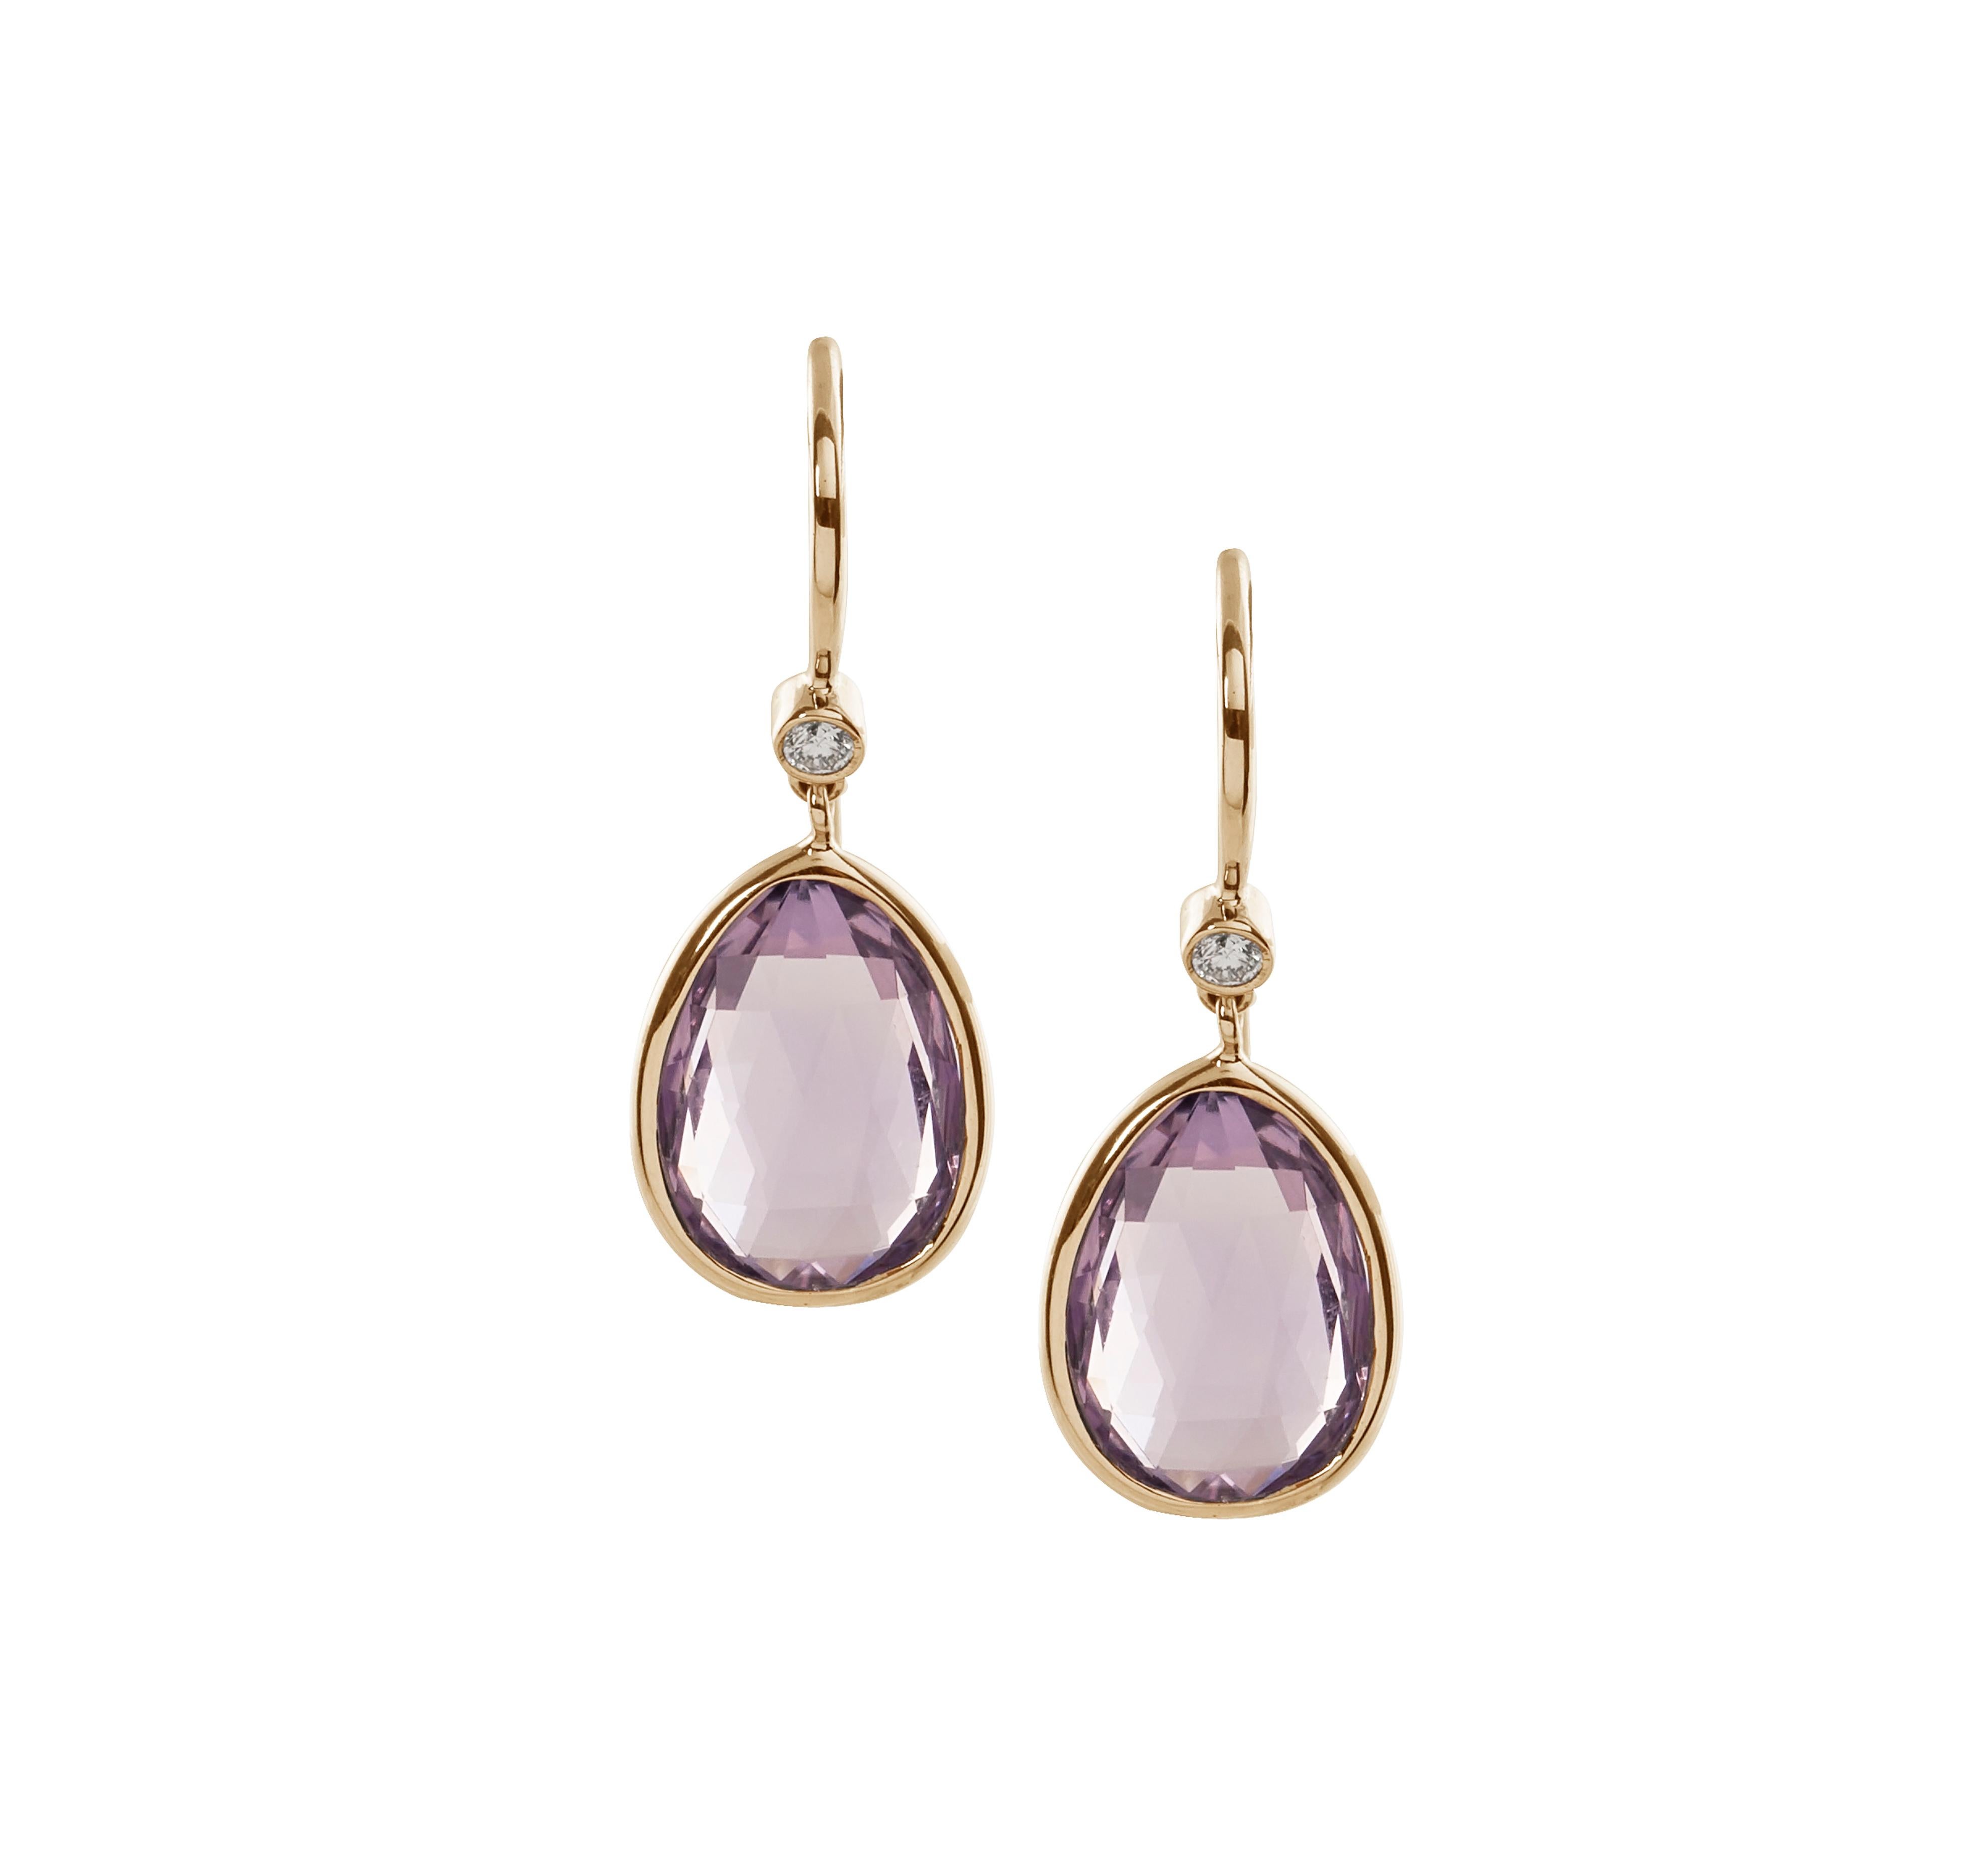 Pear Cut Goshwara Lavender Amethyst Pear Shape with Diamonds on Wire Earrings